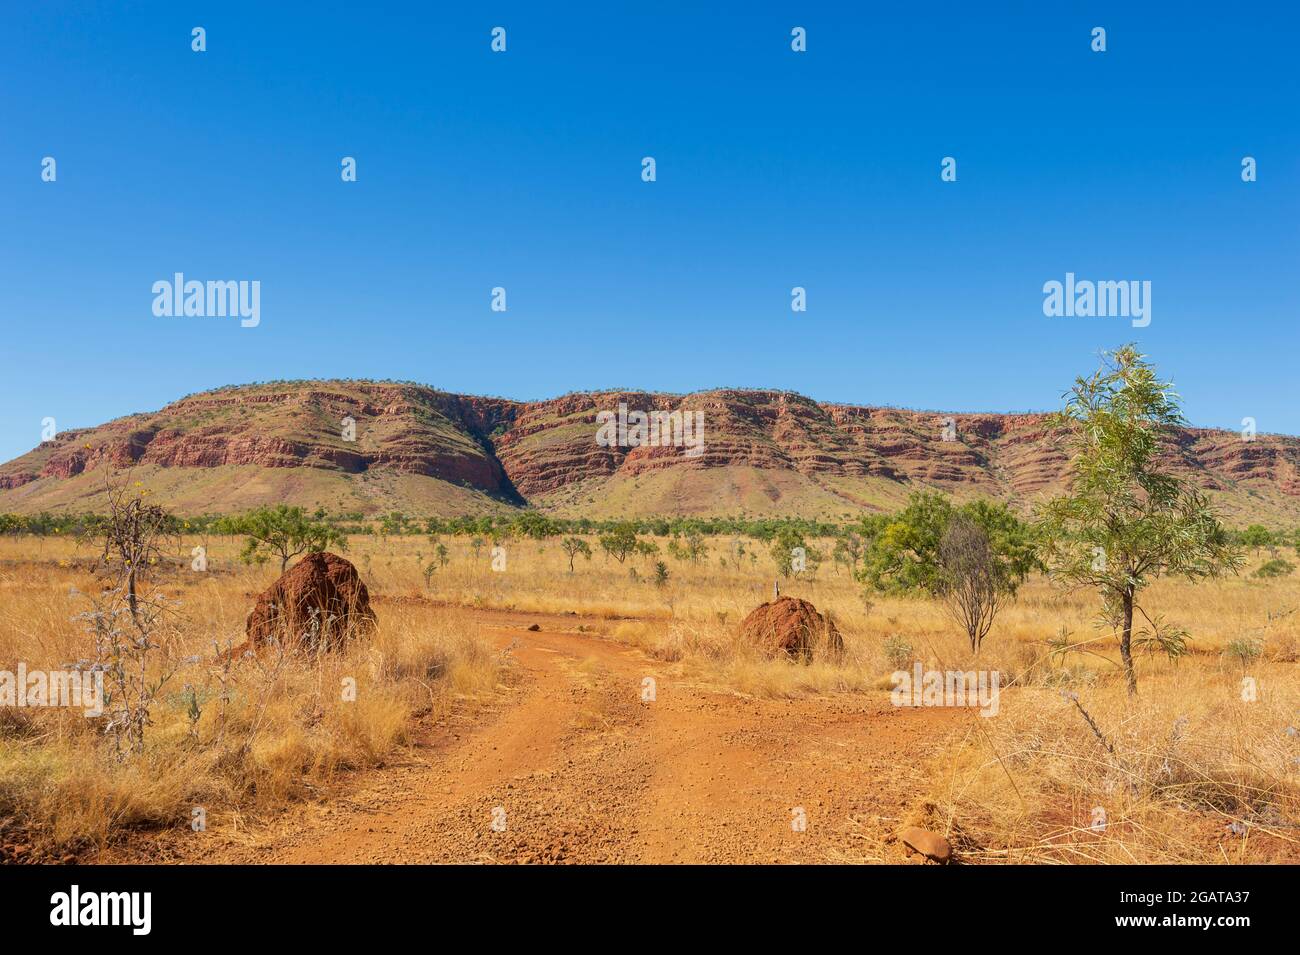 Vue panoramique sur la chaîne des montagnes du Roi Léopold et la savane avec termites, région de Kimberley, Australie occidentale, Australie occidentale, Australie occidentale, Australie Banque D'Images